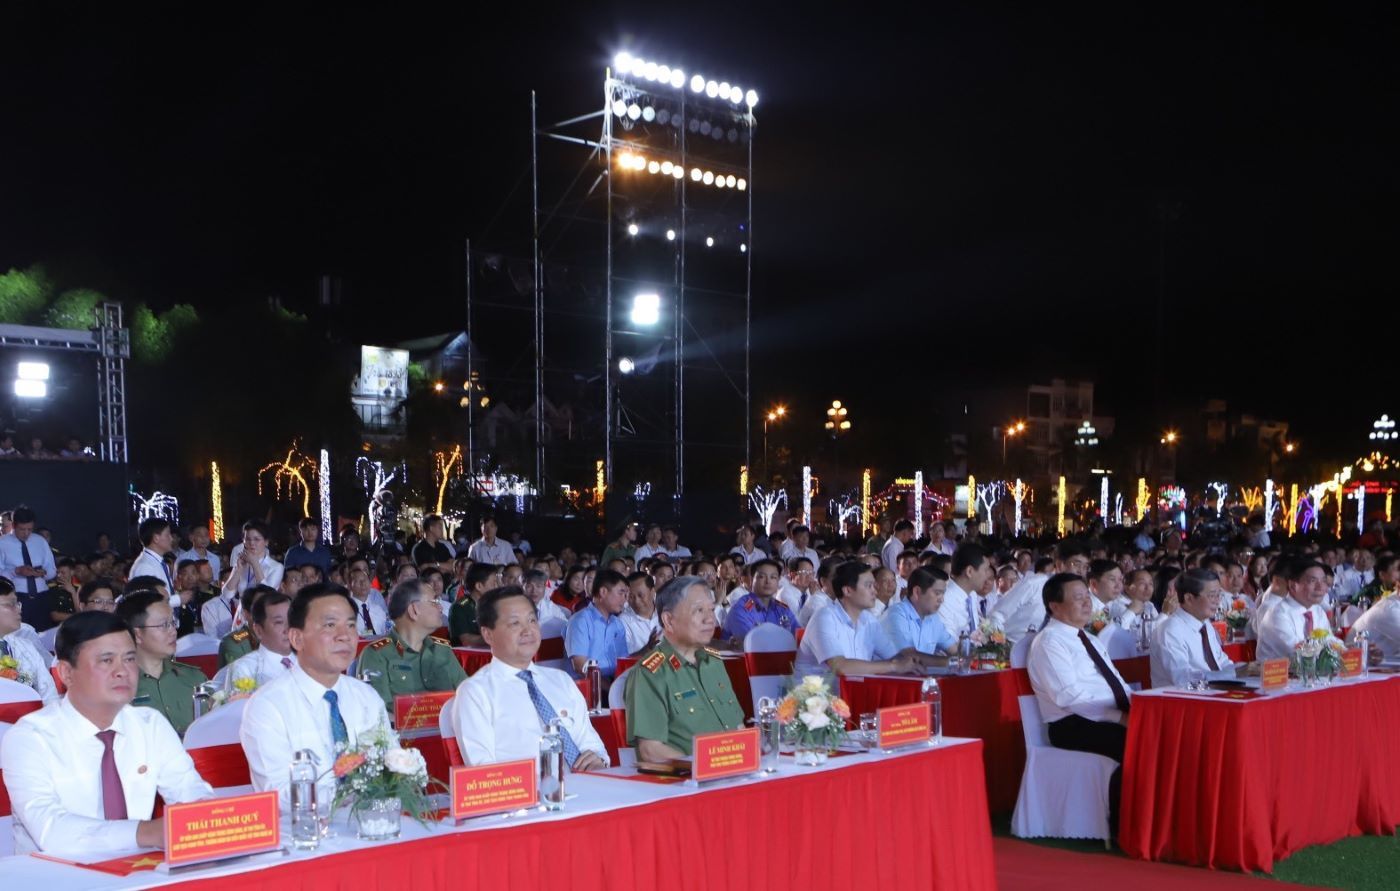 Đại tướng Tô Lâm - Ủy viên Bộ Chính trị, Bộ trưởng Bộ Công an dự Chương trình tại điểm cầu Thanh Hóa.